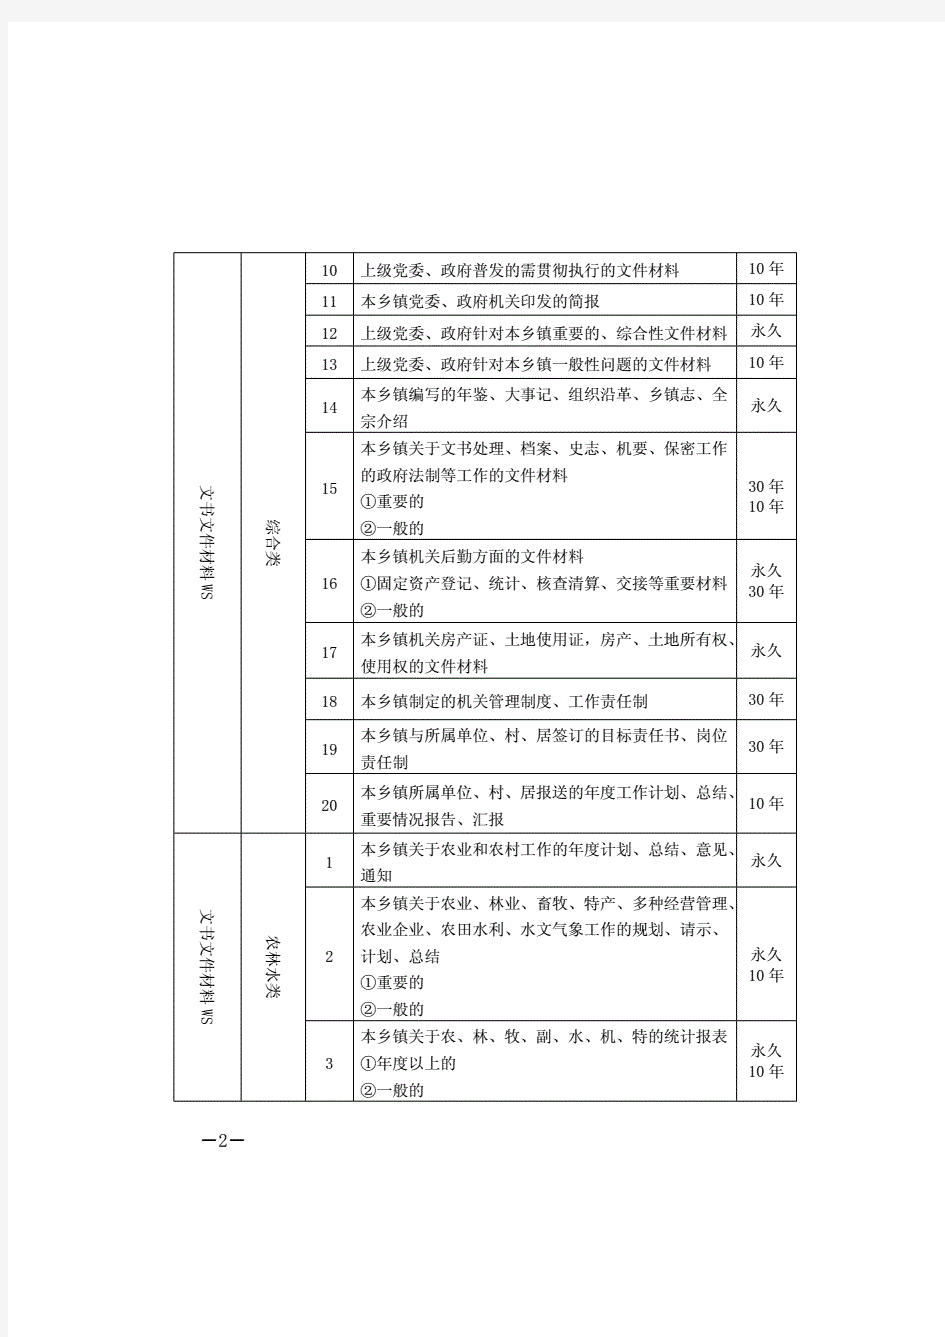 远安县乡镇机关档案分类方案归档范围保管期限表